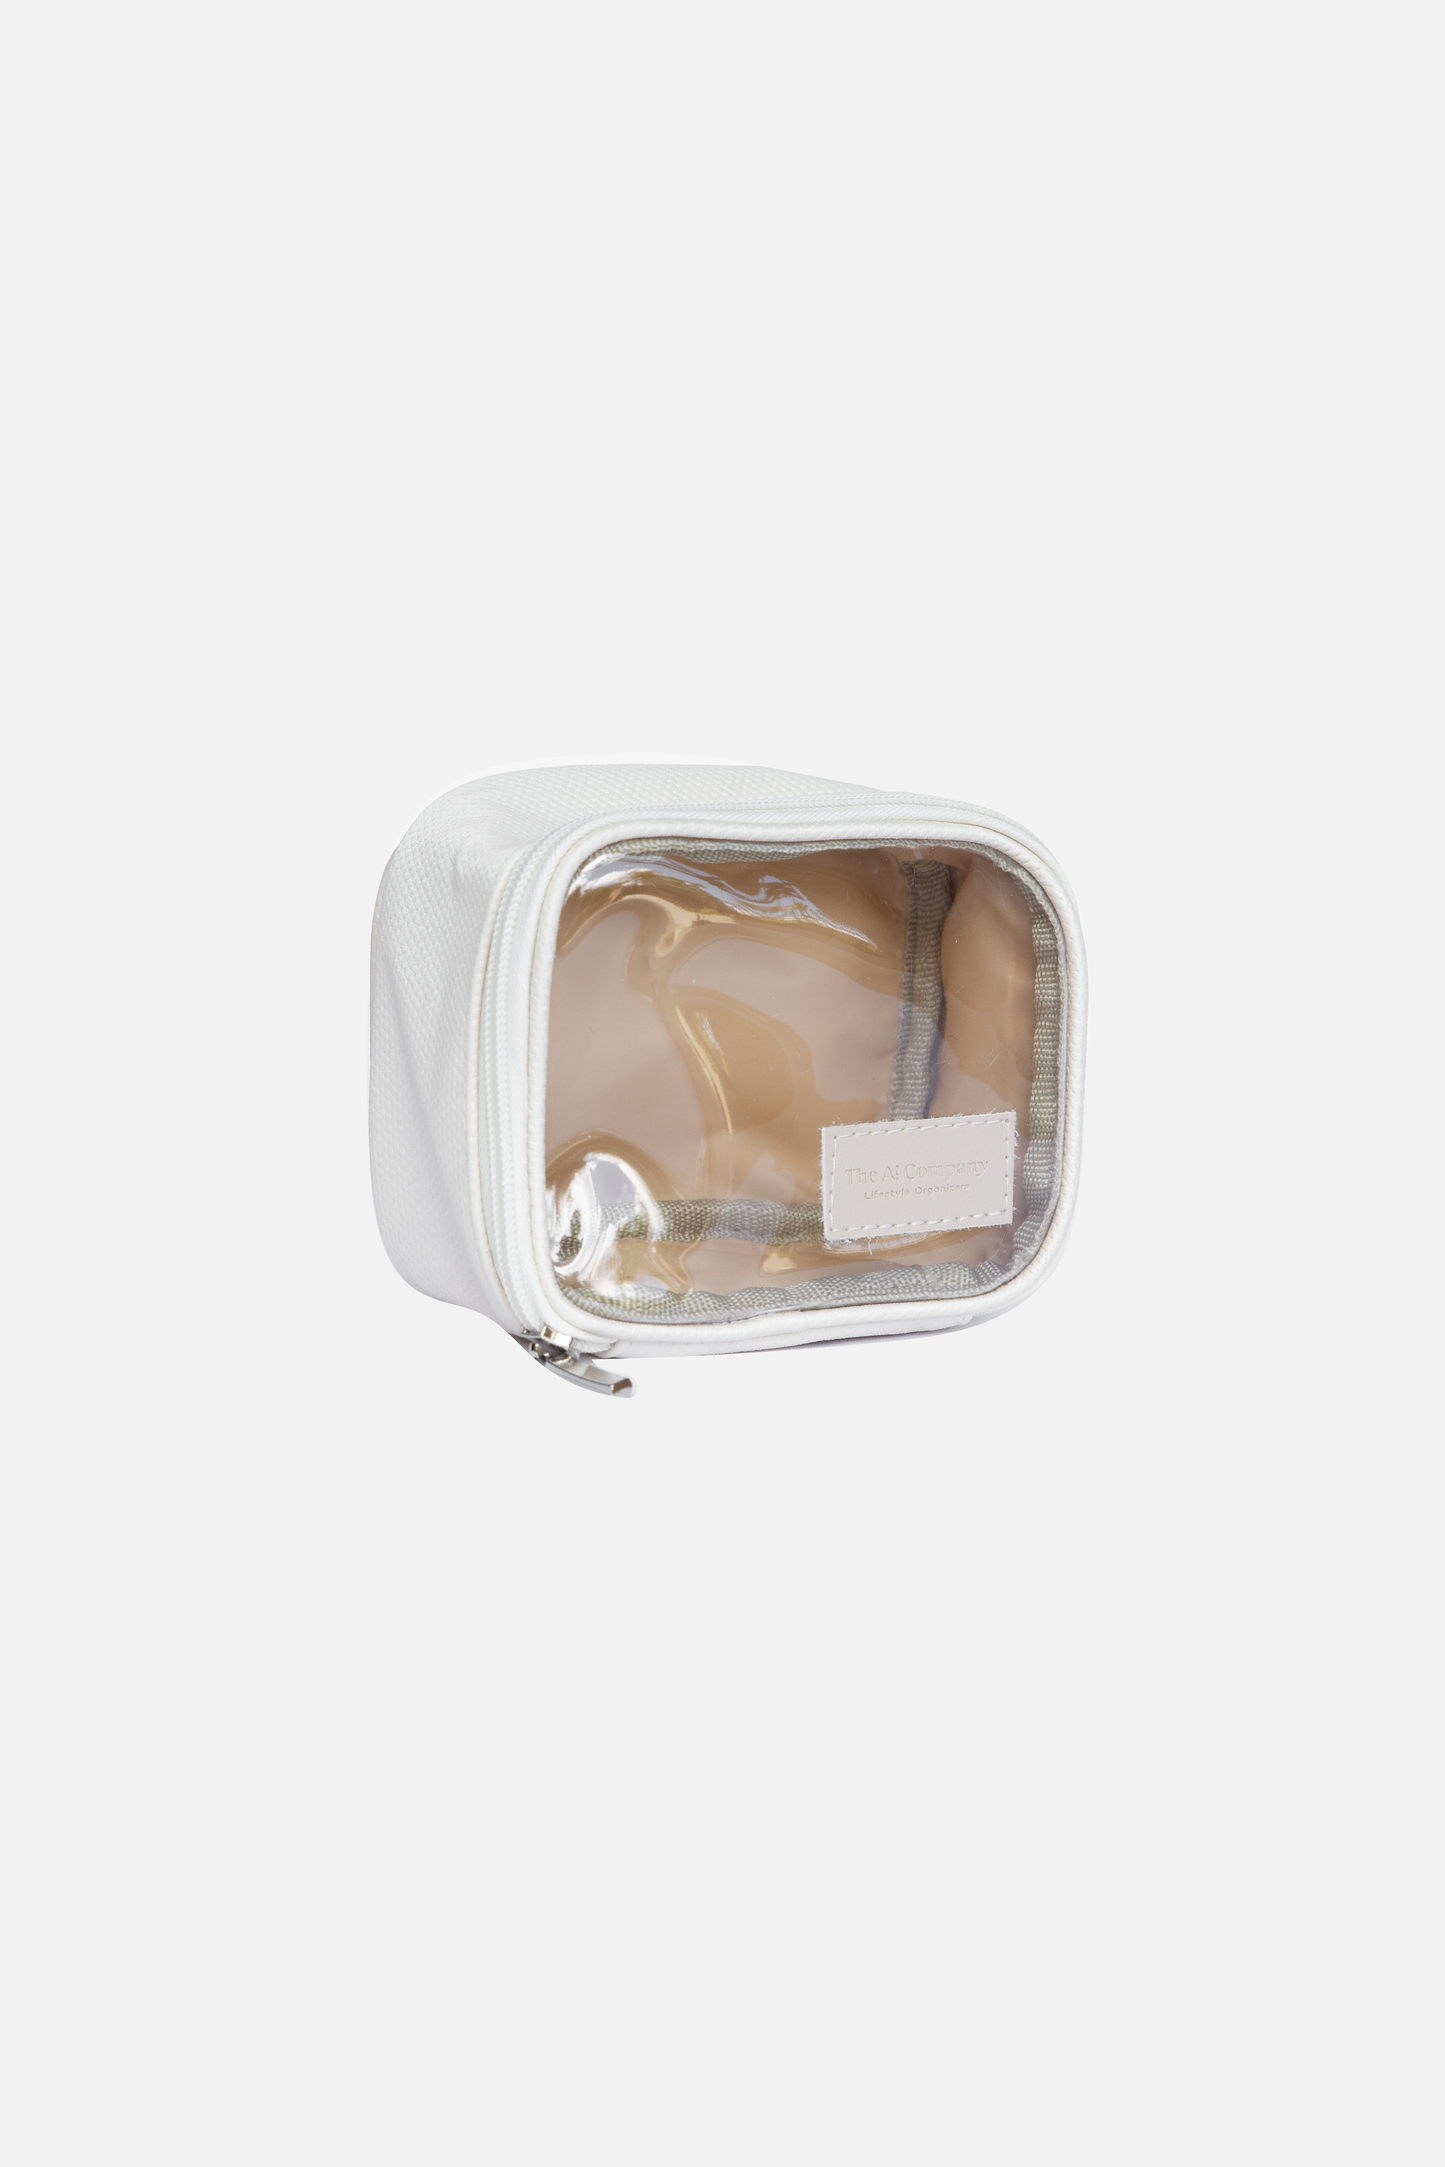 Organizador/Cosmetiquera Glassy Bag S Latte